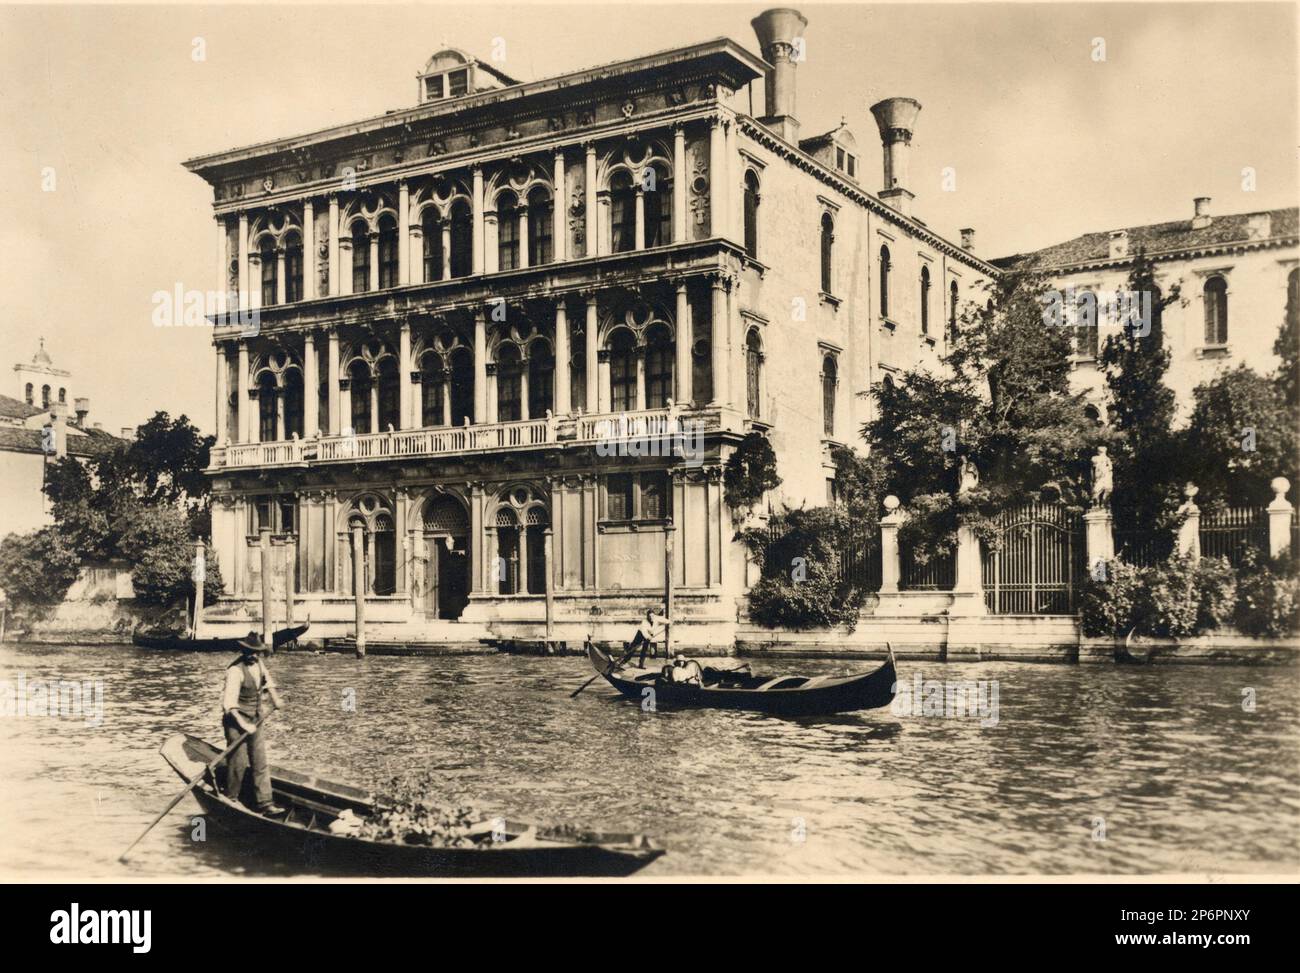 1880 Ca,Venedig, Italien : Palazzo VENDRAMIN CALRATI am Canal Grande, nach Palazzo del DUCA DELLA GRAZIA Lucchesi-Palli. Erbaut von dem Architekten P. Lombardo im Jahr 1481 . Heute hat Graf GIUSEPPE VOLPI DI MISURATA die Casinò DELLA Città DI VENEZIA gekauft. Der berühmte Opernkomponist RICHARD WAGNER ( 1813 - 1883 ) , der in diesem Haus die Komposition " Parsifal " ( 1882 ) schrieb , blieb und fand ihn tot . Heute ist der Palast das Casinò DI VENEZIA - VENEZIA - ITALIA - GEOGRAFIE - GEOGRAFIA - FOTOSTORICHE - GESCHICHTE - HISTORISCH - ARCHITETTURA - ARCHITEKTUR - Gondel - Gondole Stockfoto